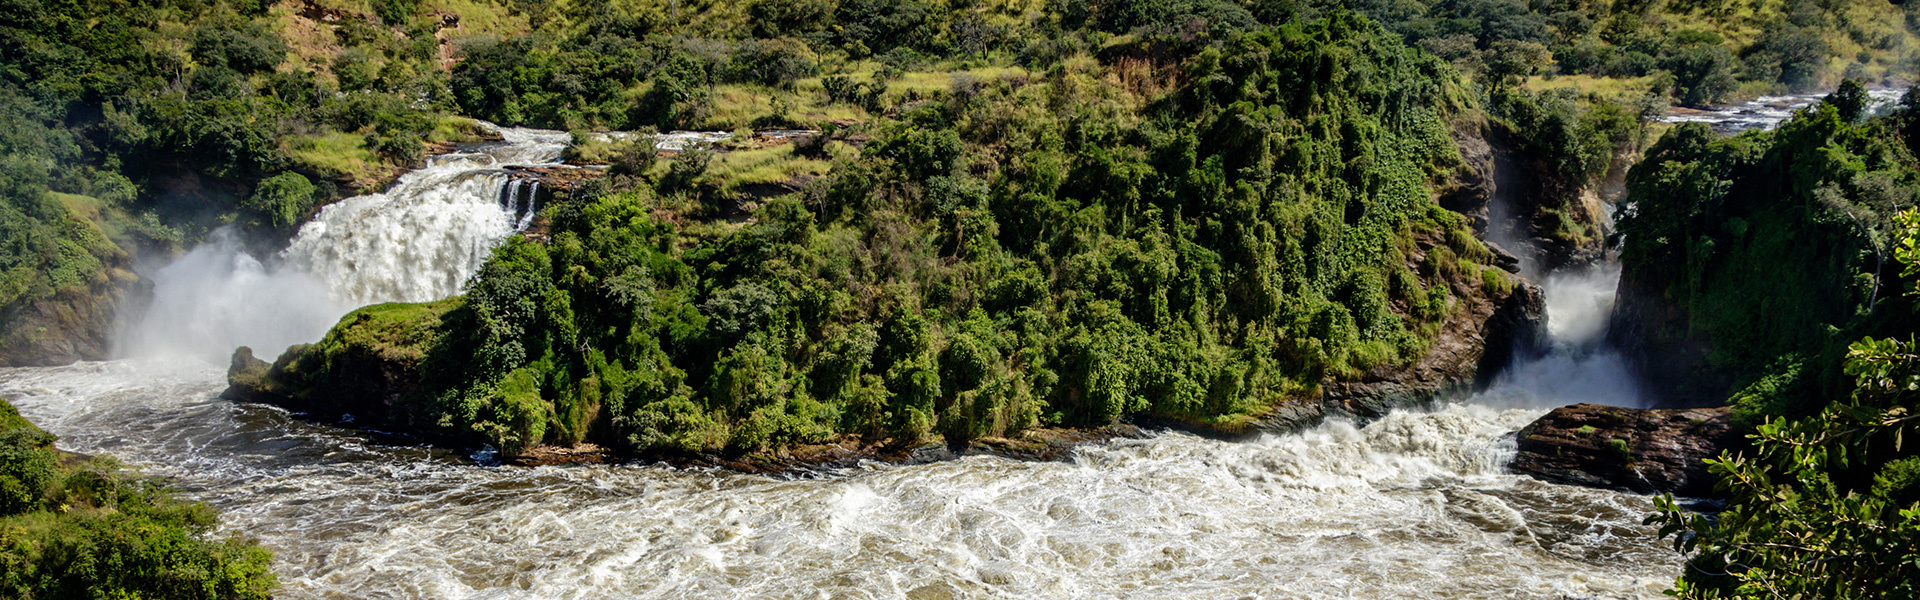 Parc national de Murchison Falls | Sous l'Acacia